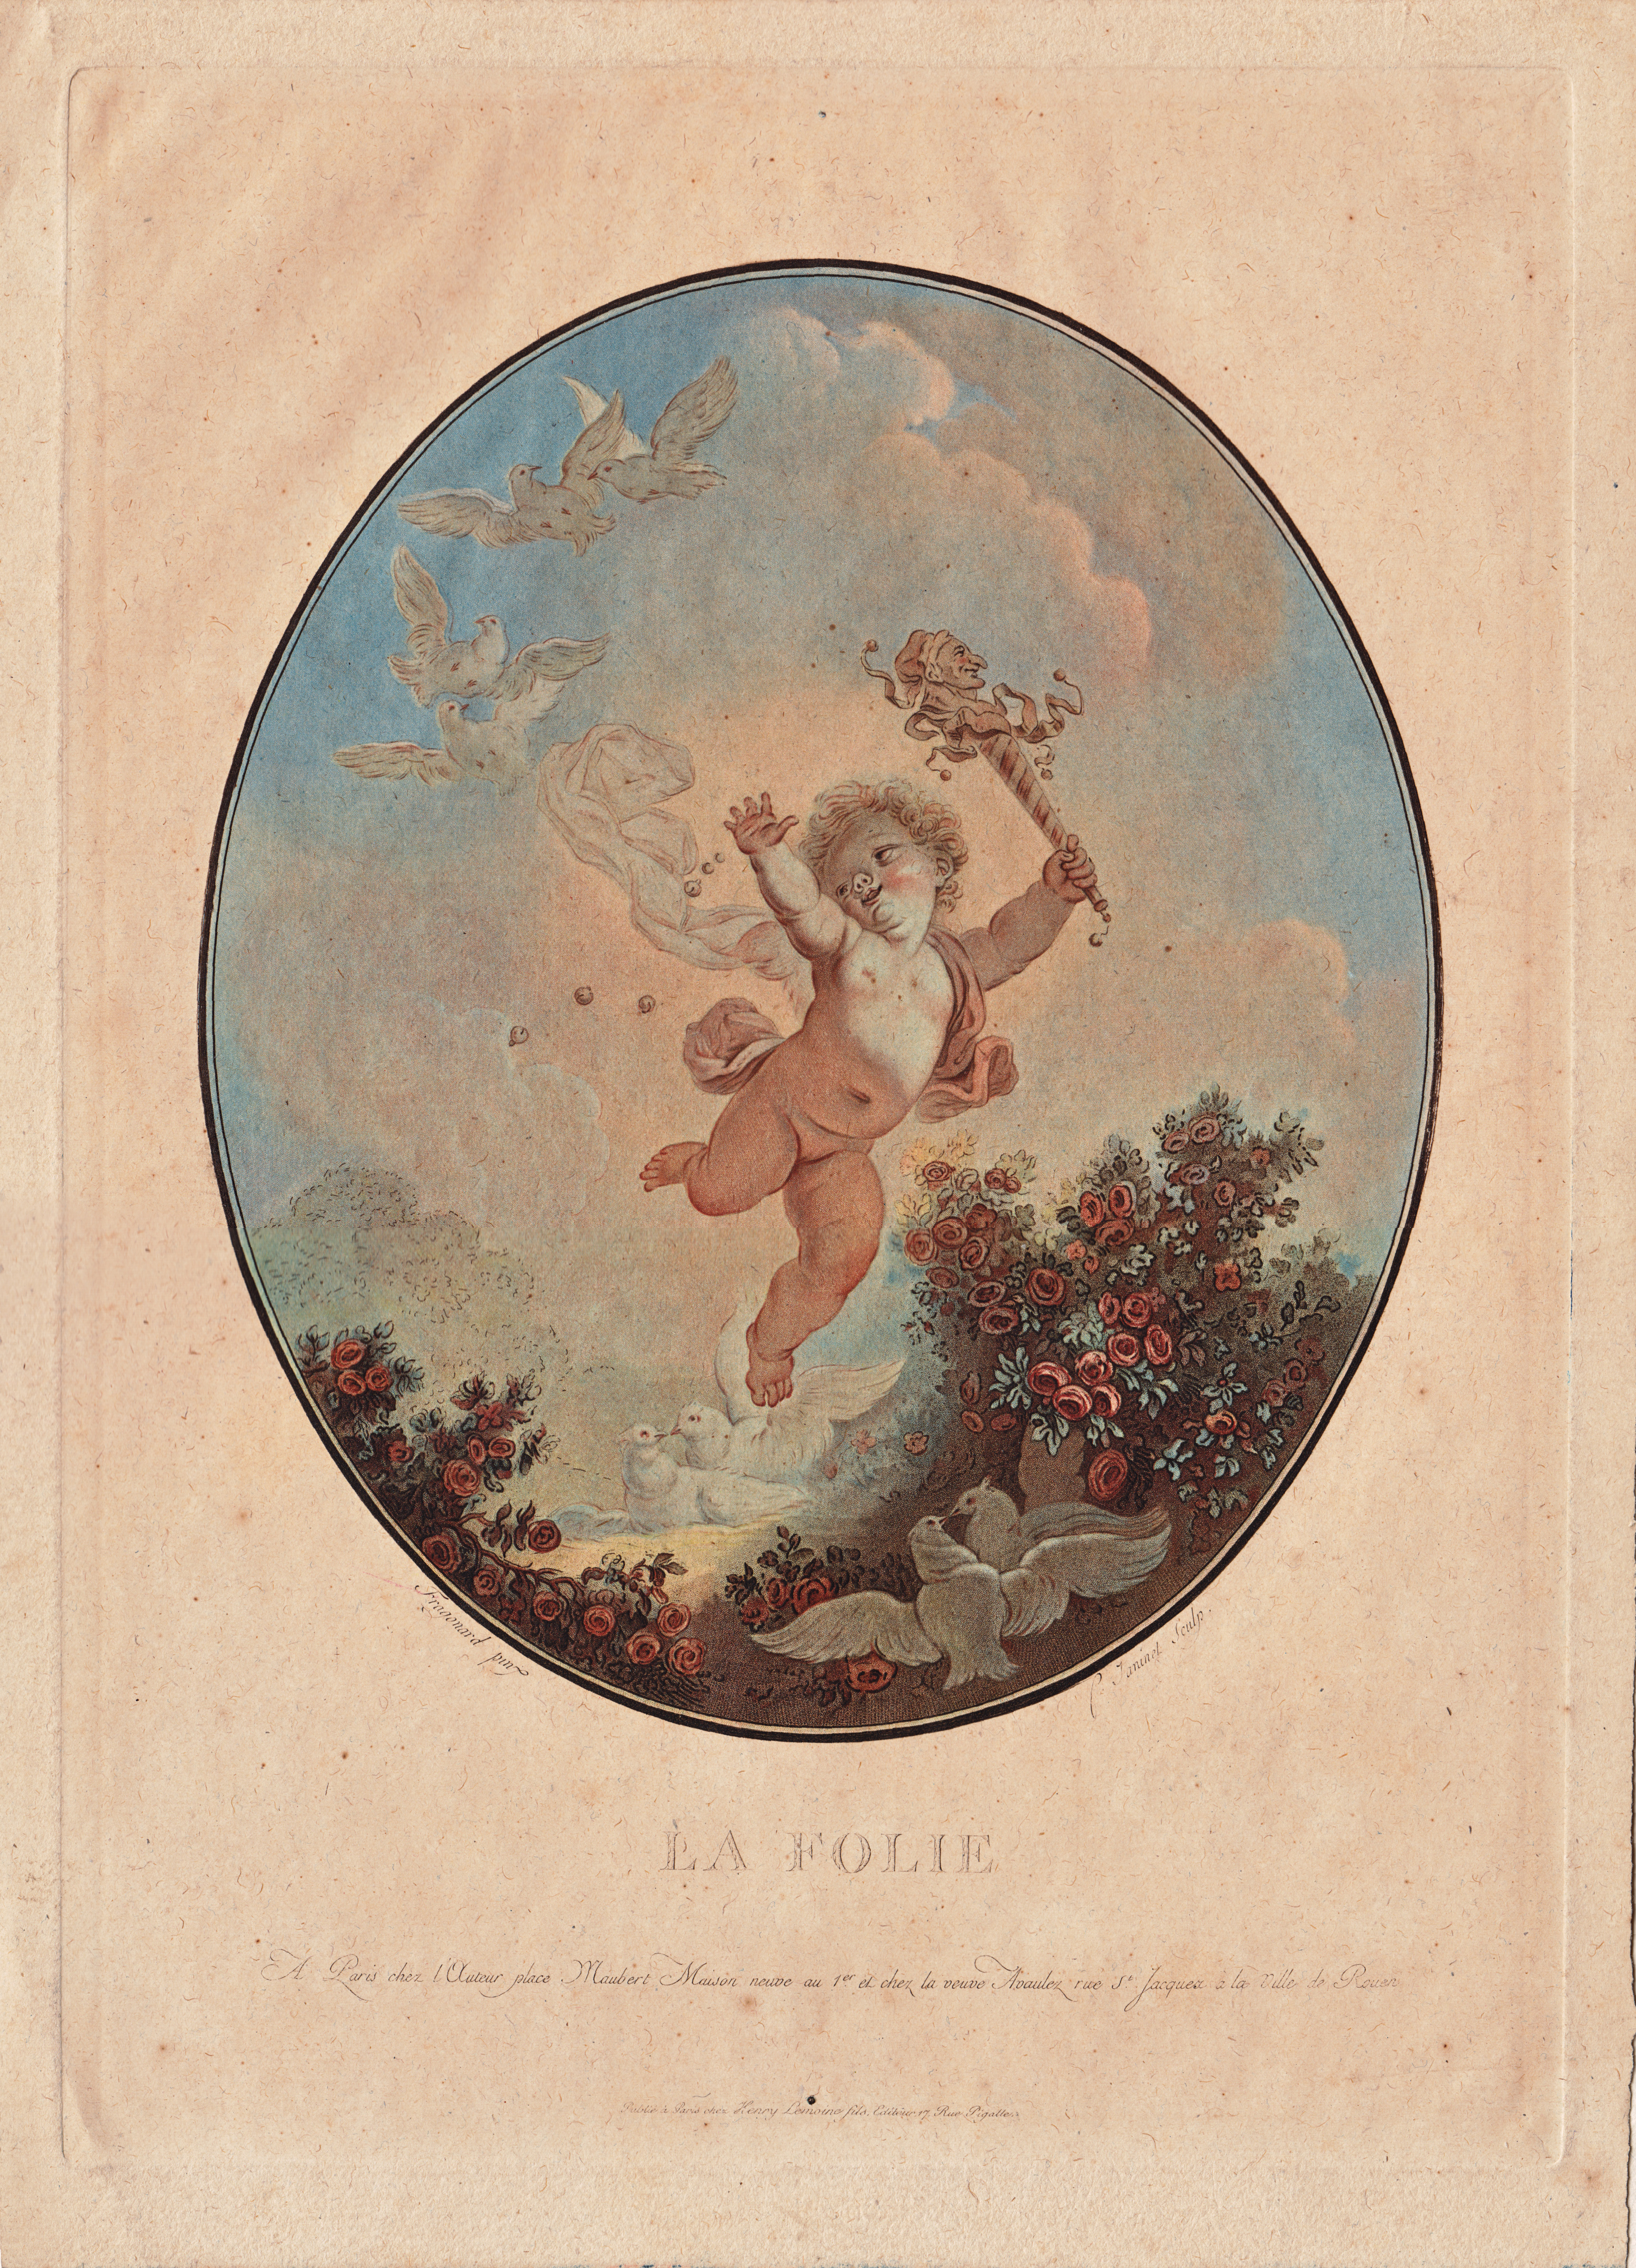 Jean-François Janinet, La Folie, etching and aquatint